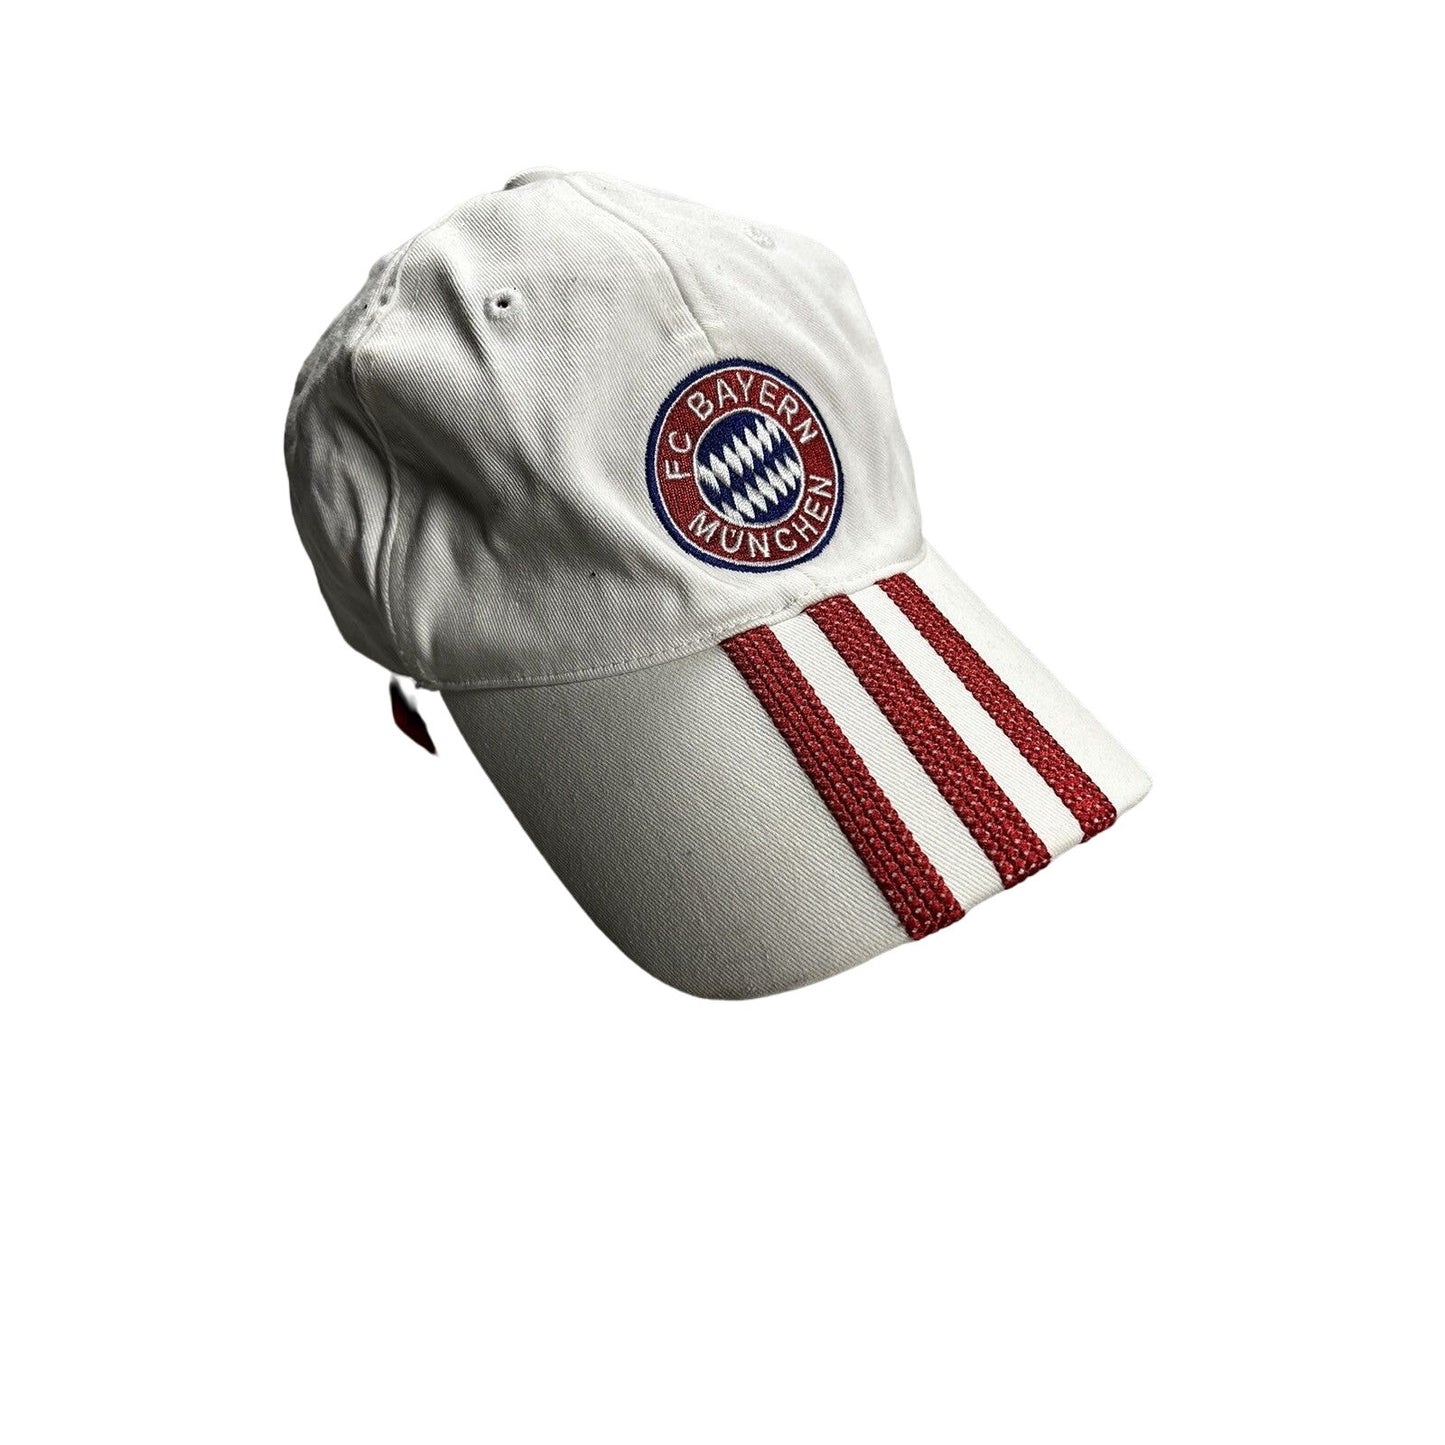 Bayern Munich Adidas cap Vintage 2000s white